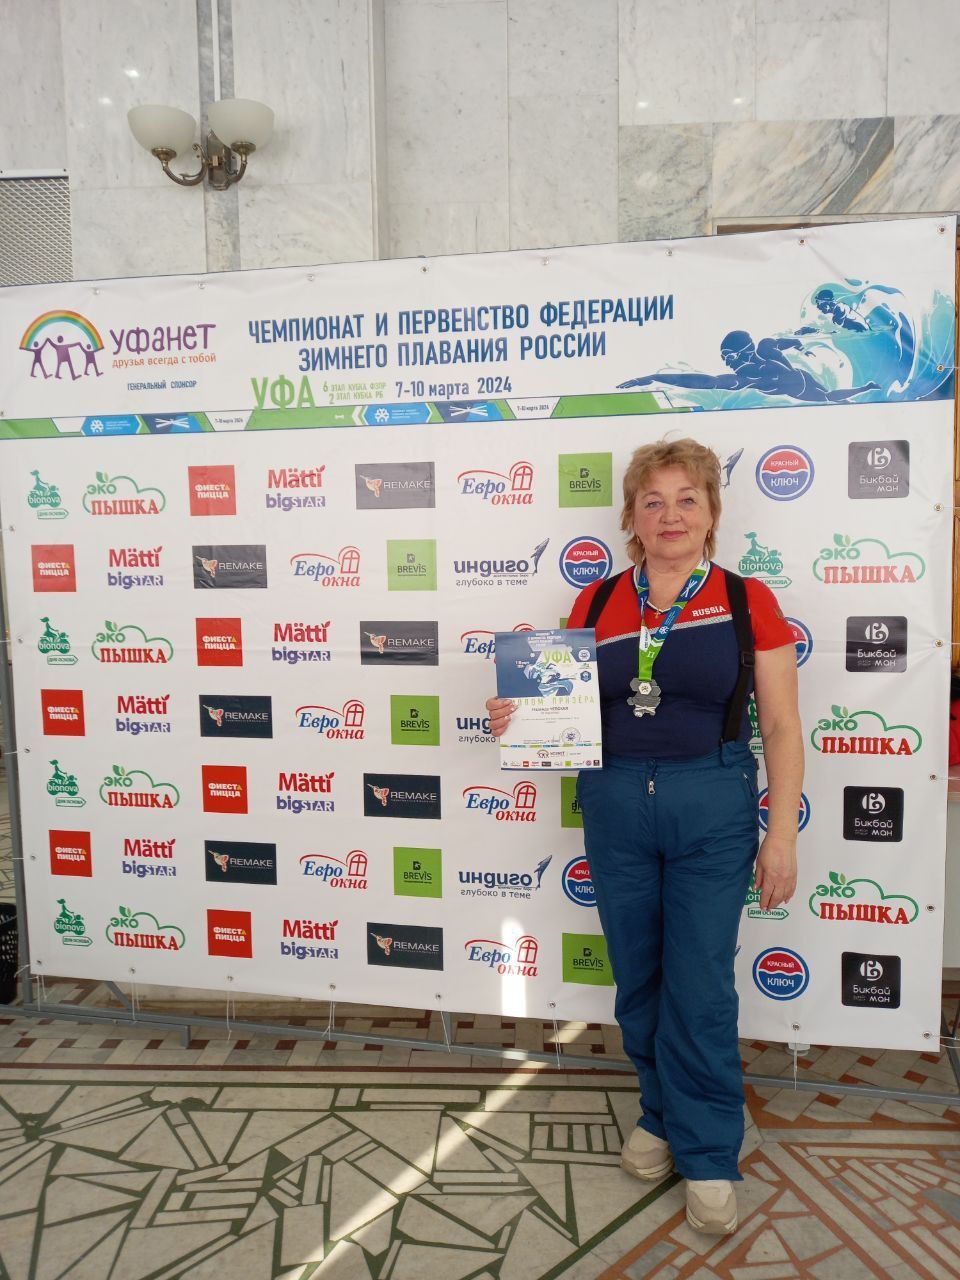 Член Ульяновского реготделения заняла второе место на Чемпионате и Первенстве Федерации зимнего плавания России